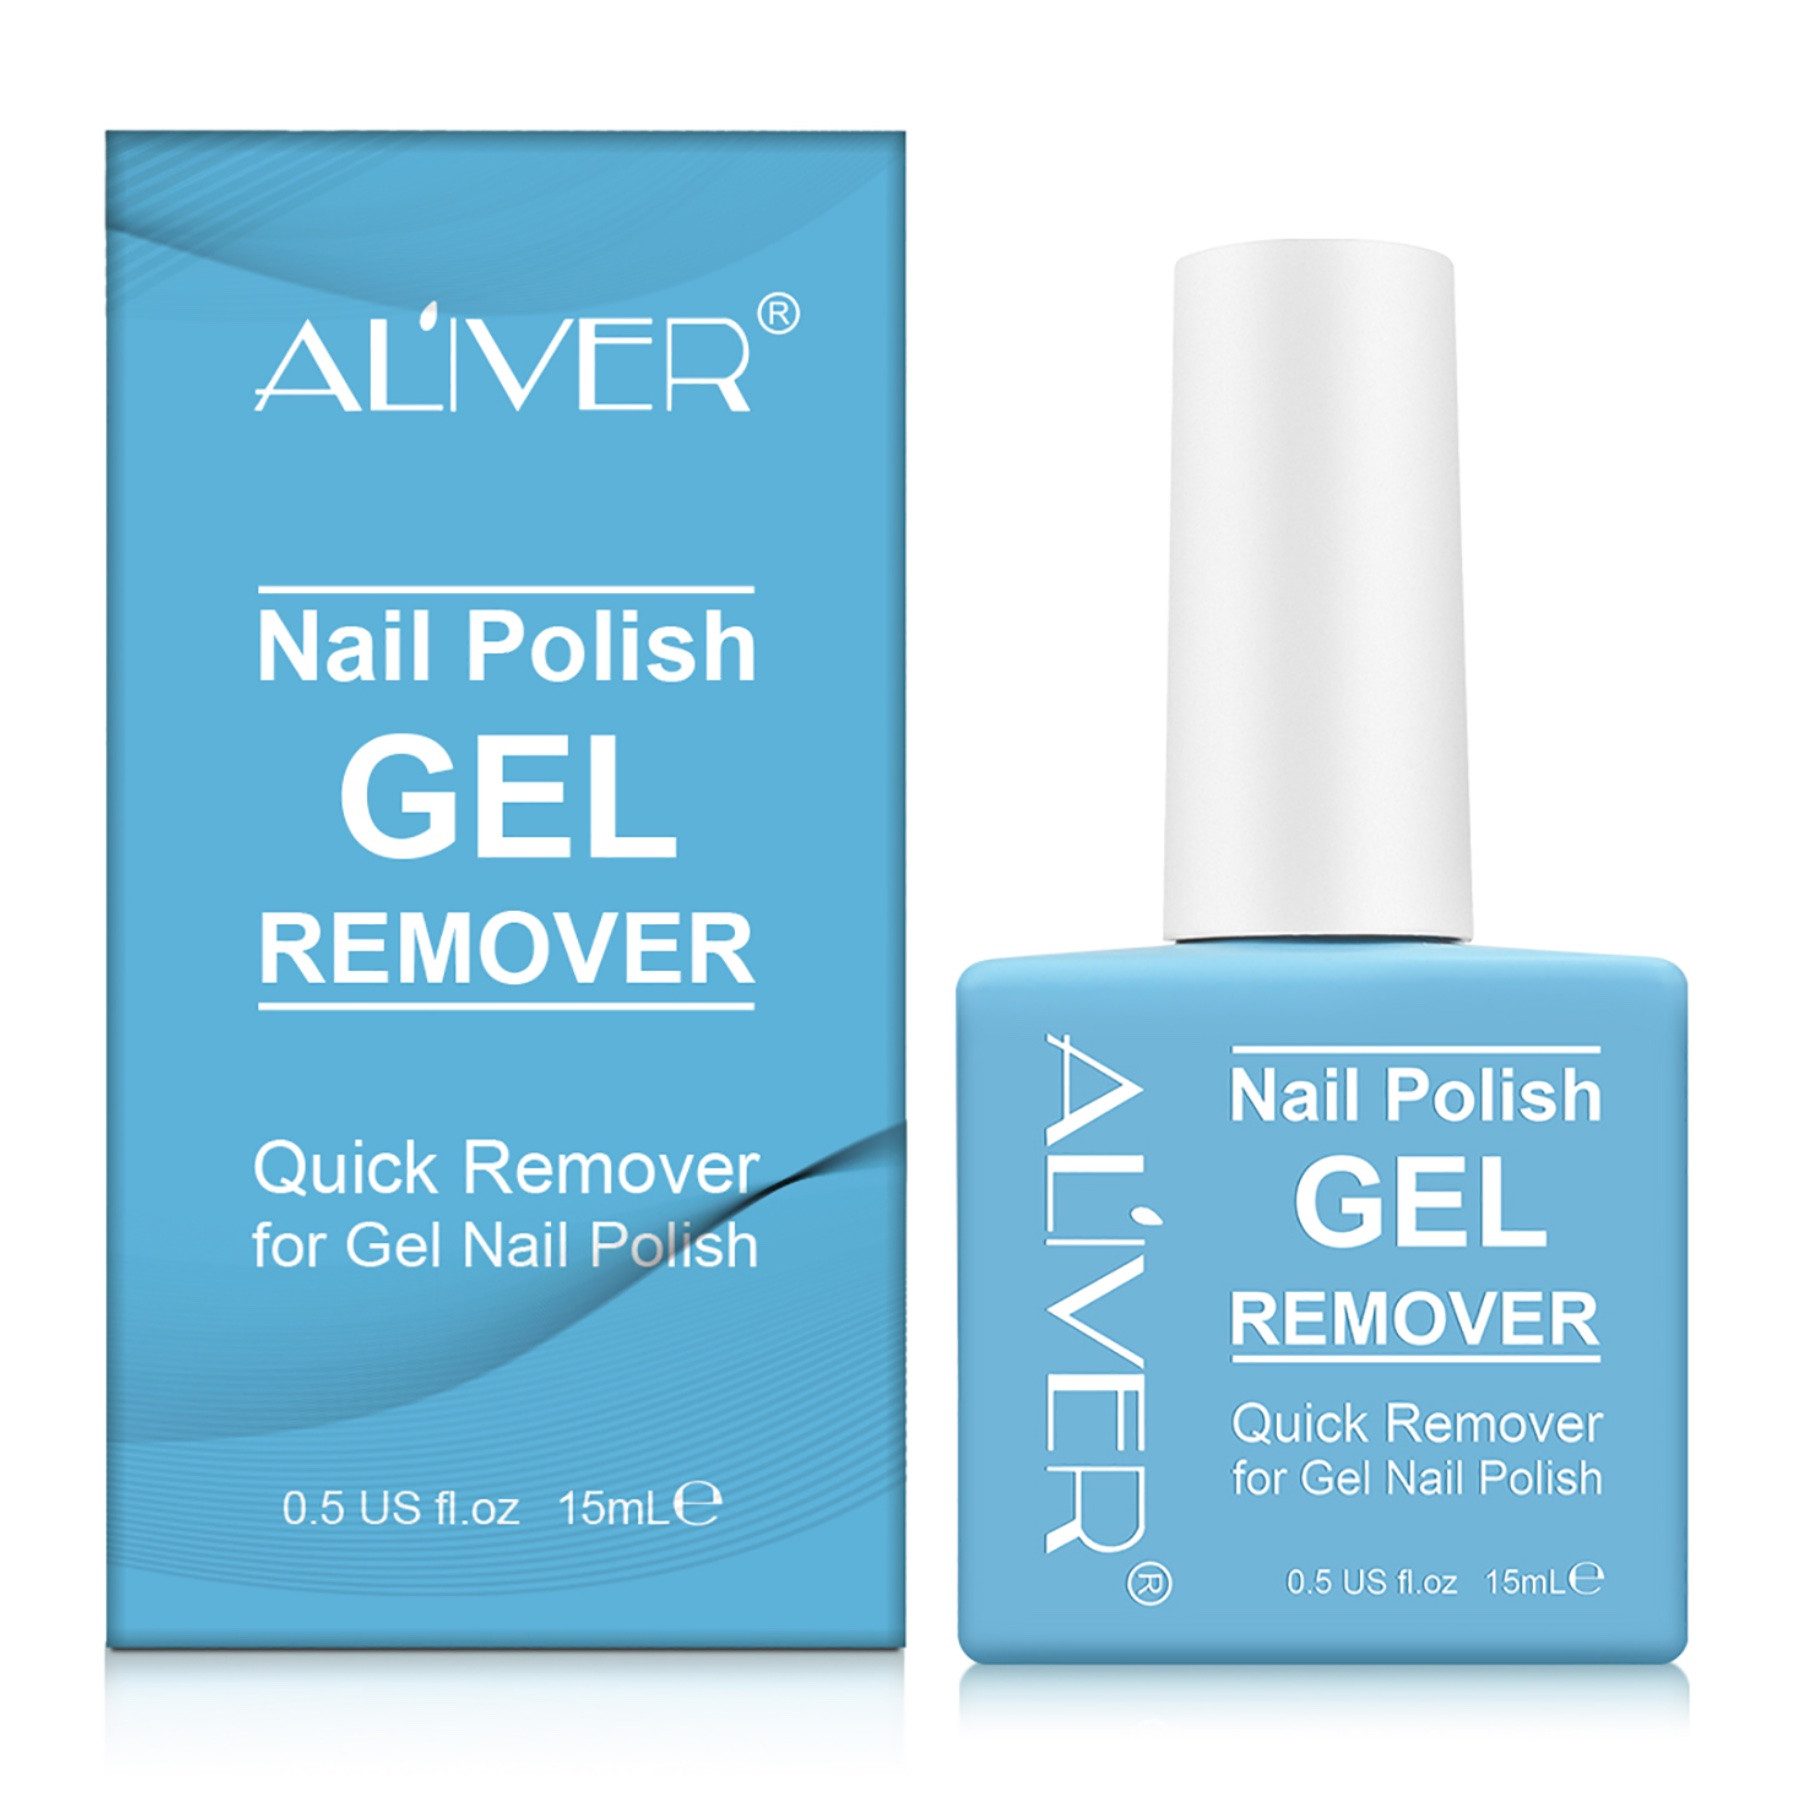 ALIVER Nagellackentferner Remover Gellack Entferner Gel Nail Polish Aliver, 1-tlg.